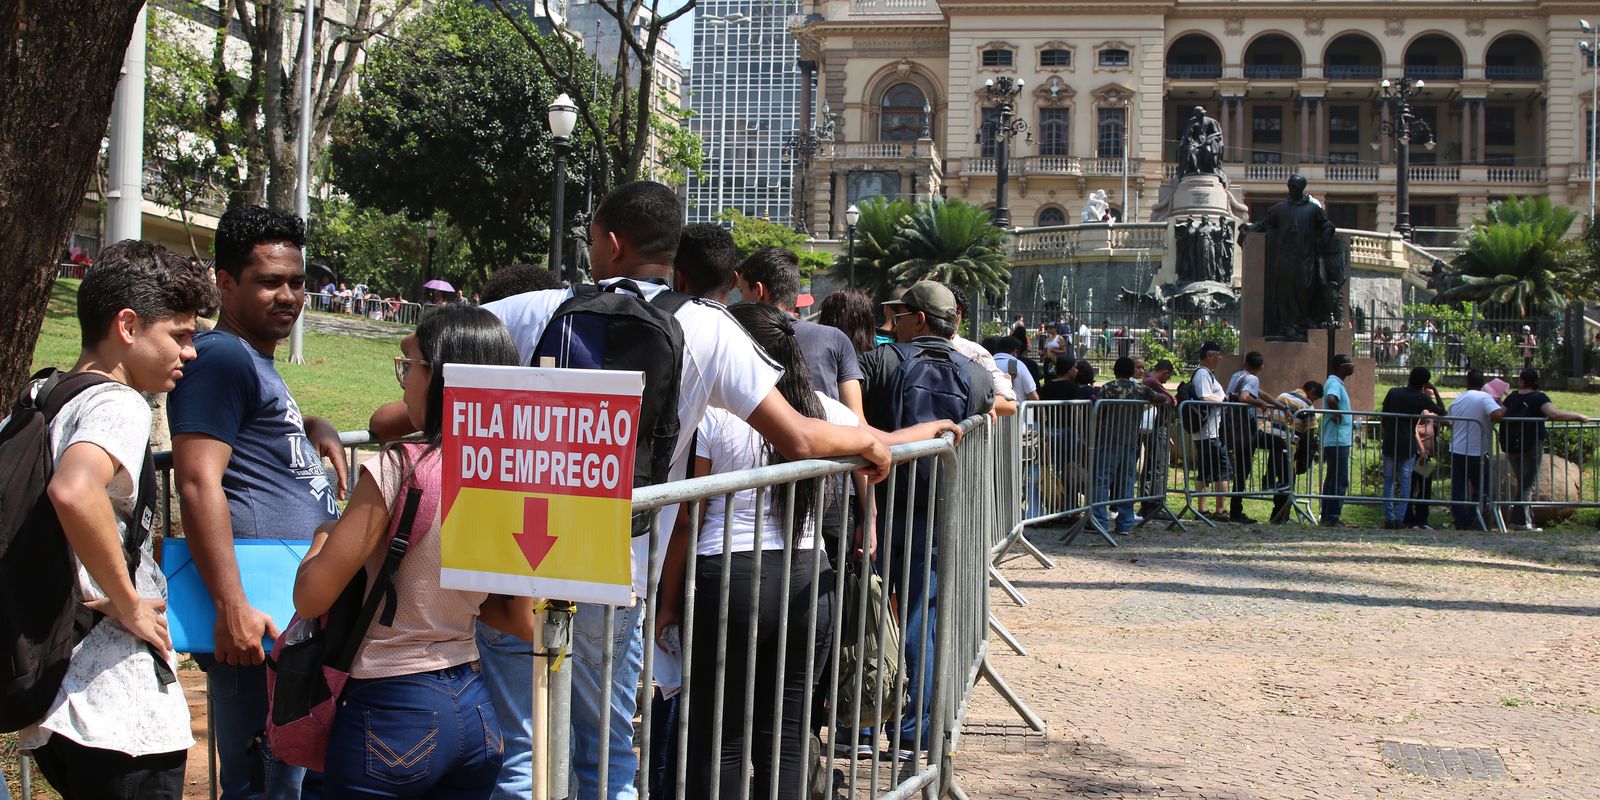 O sindicato dos comerciários de São Paulo promove, mutirão do emprego em São Paulo, ofertando 5.726 vagas.